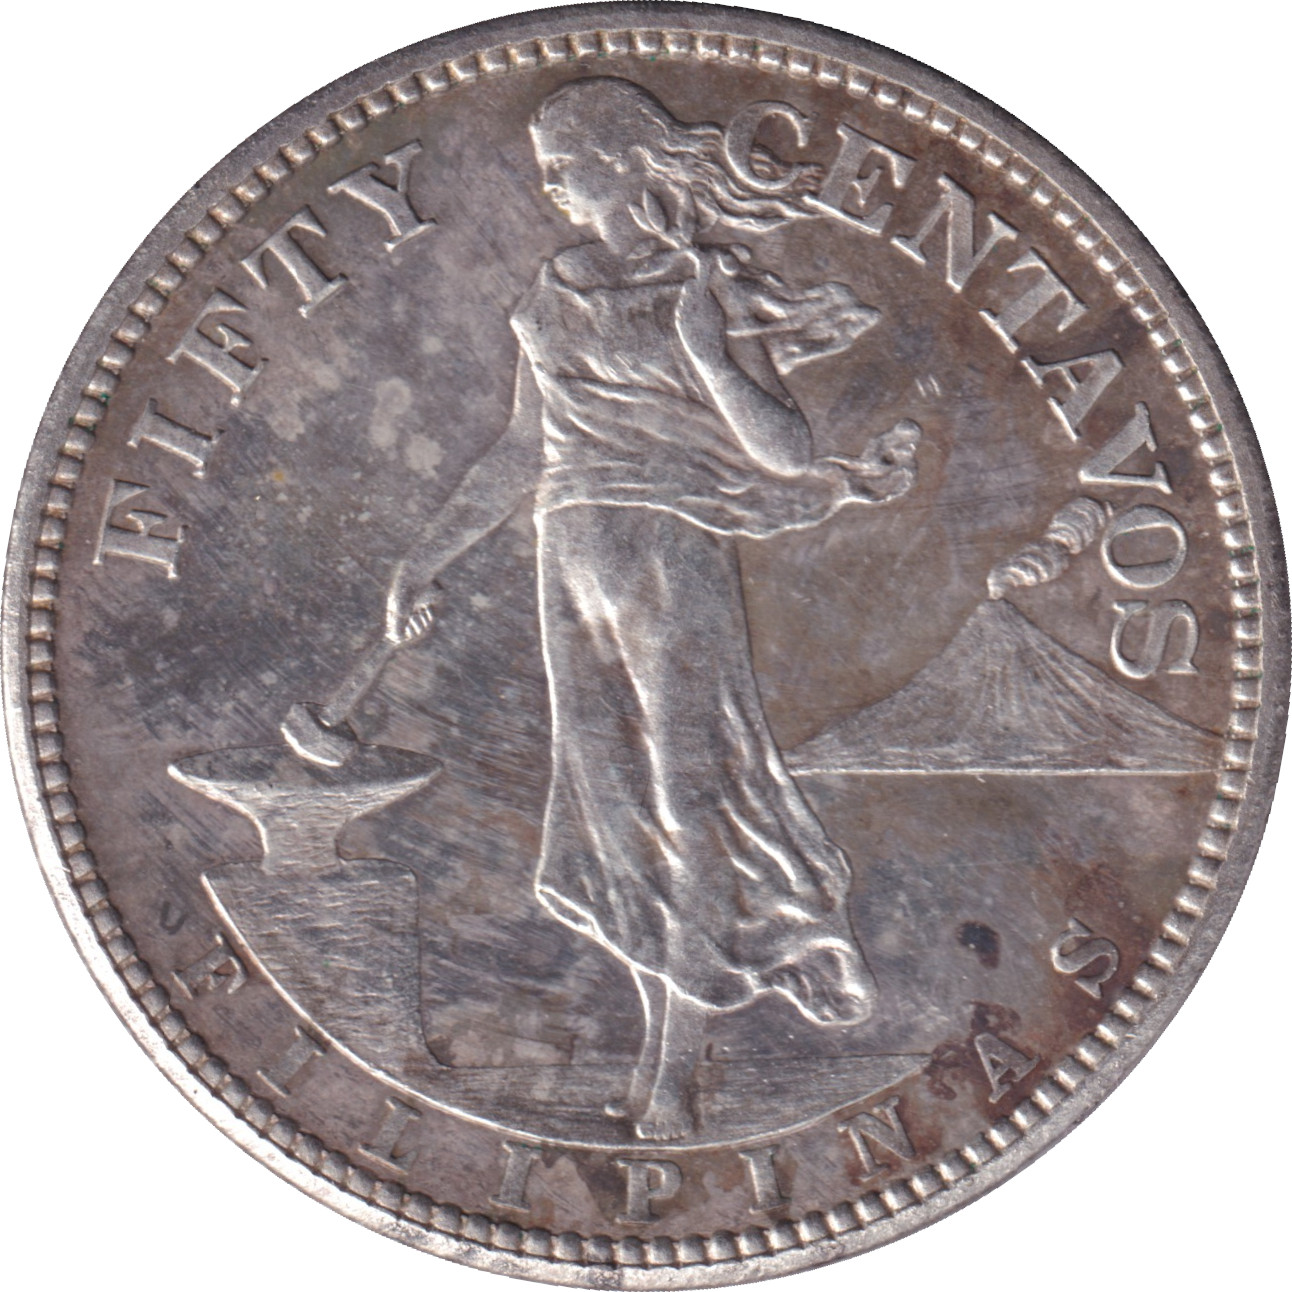 50 centavos - Emblème américain - Type léger